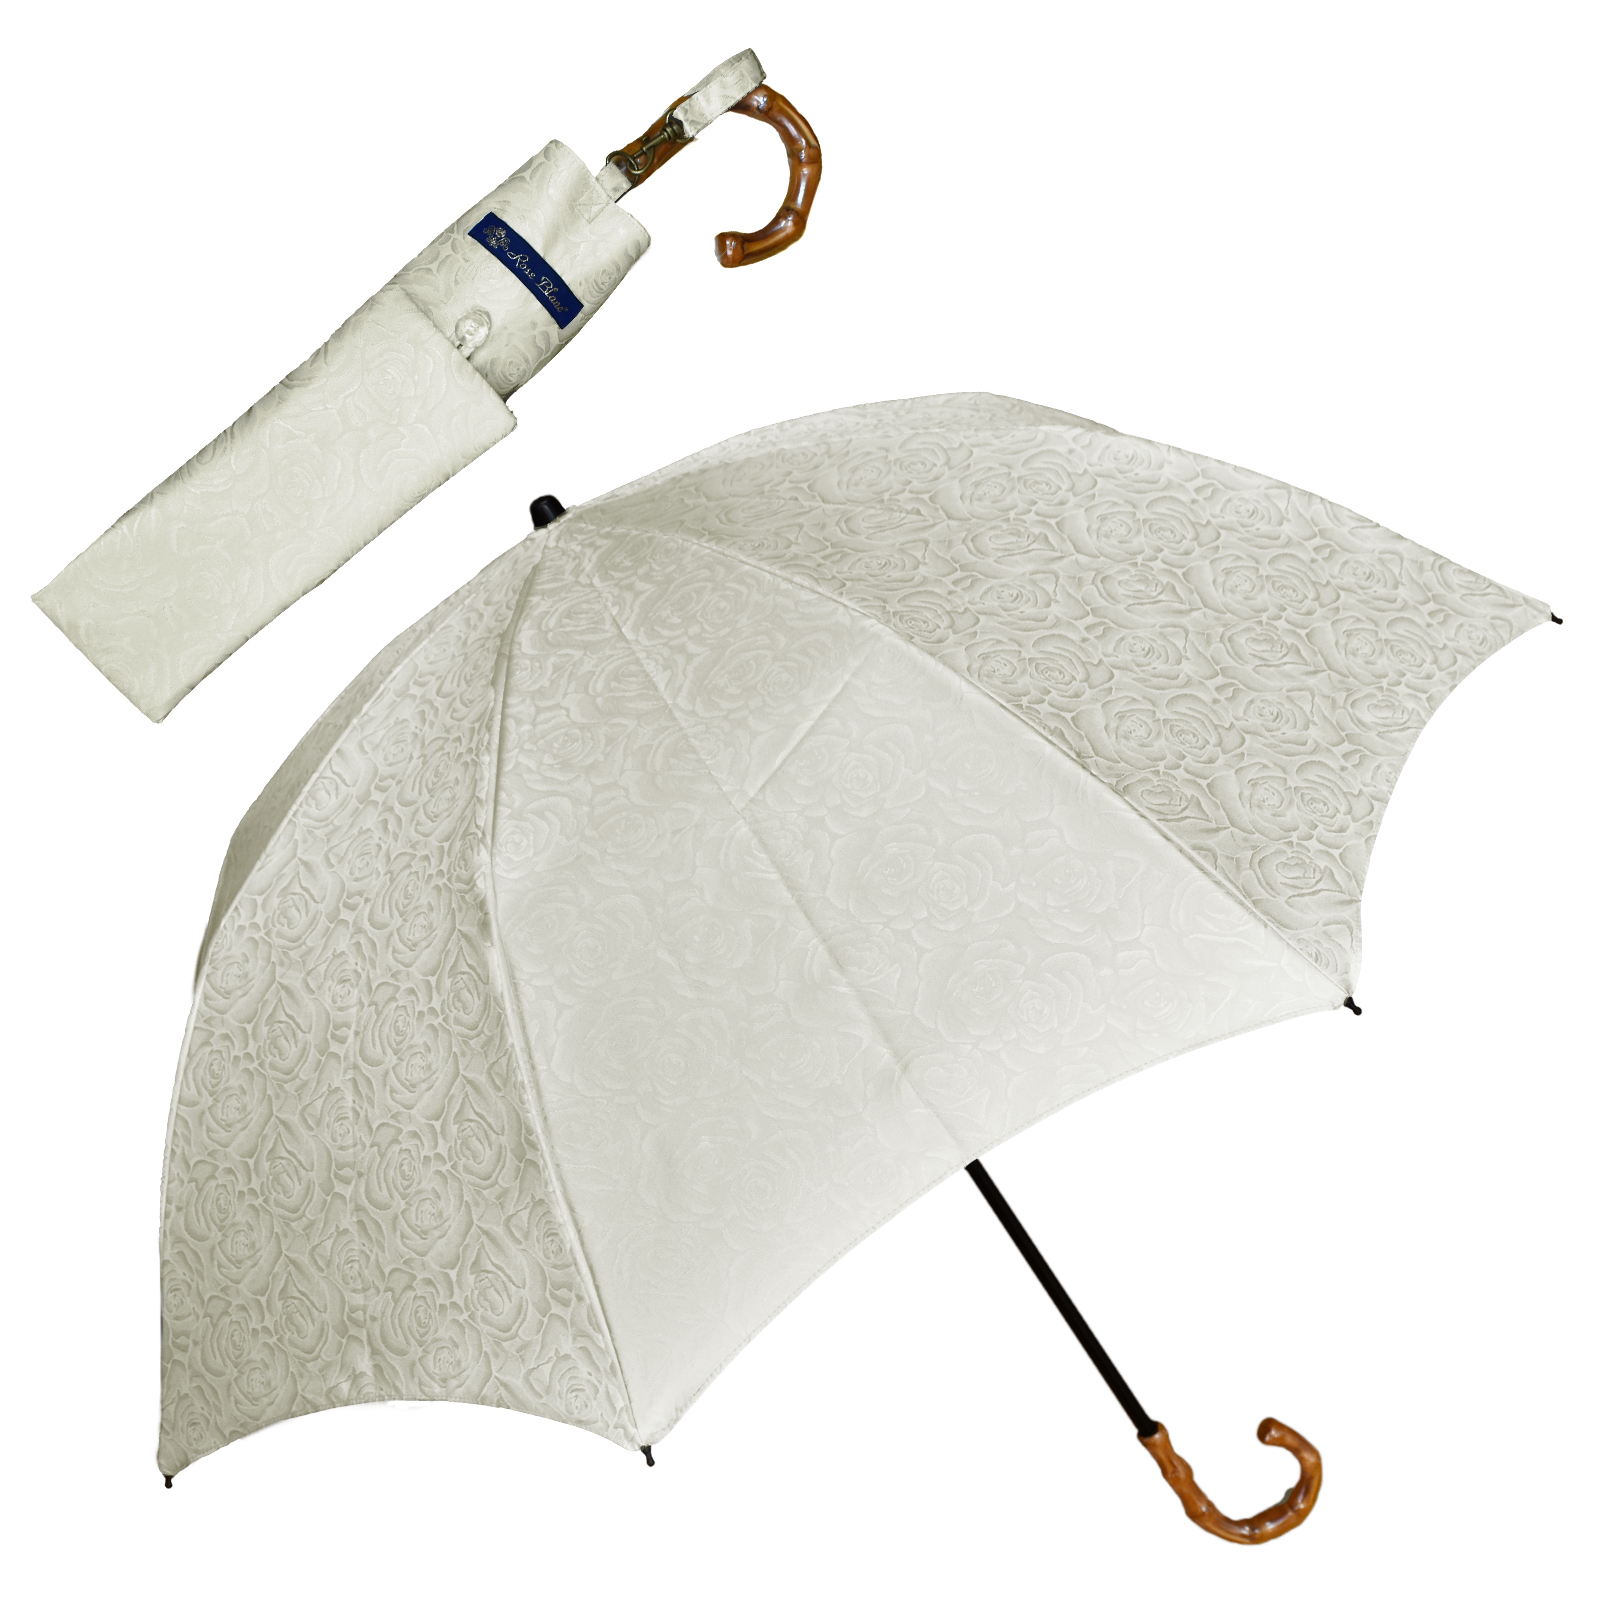 日傘 完全遮光 折りたたみ uv 晴雨兼用 軽量 涼しい おしゃれ 2段 折りたたみ傘 100% プ...